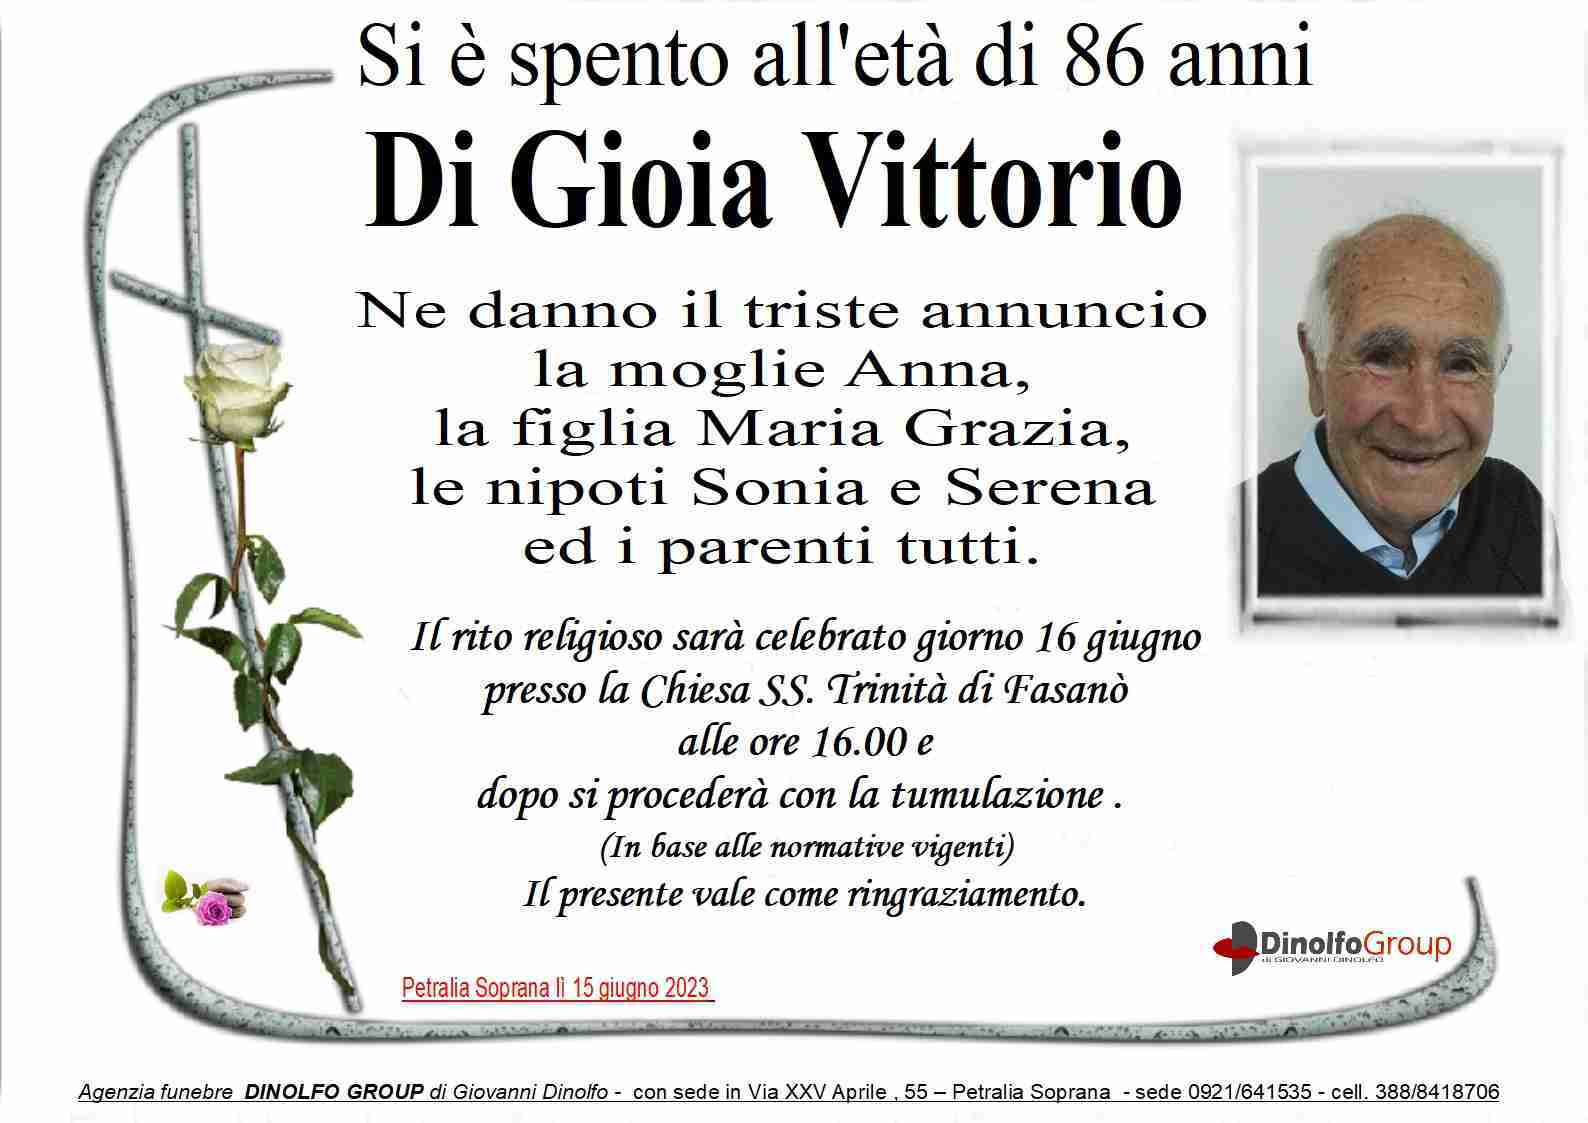 Vittorio Di Gioia